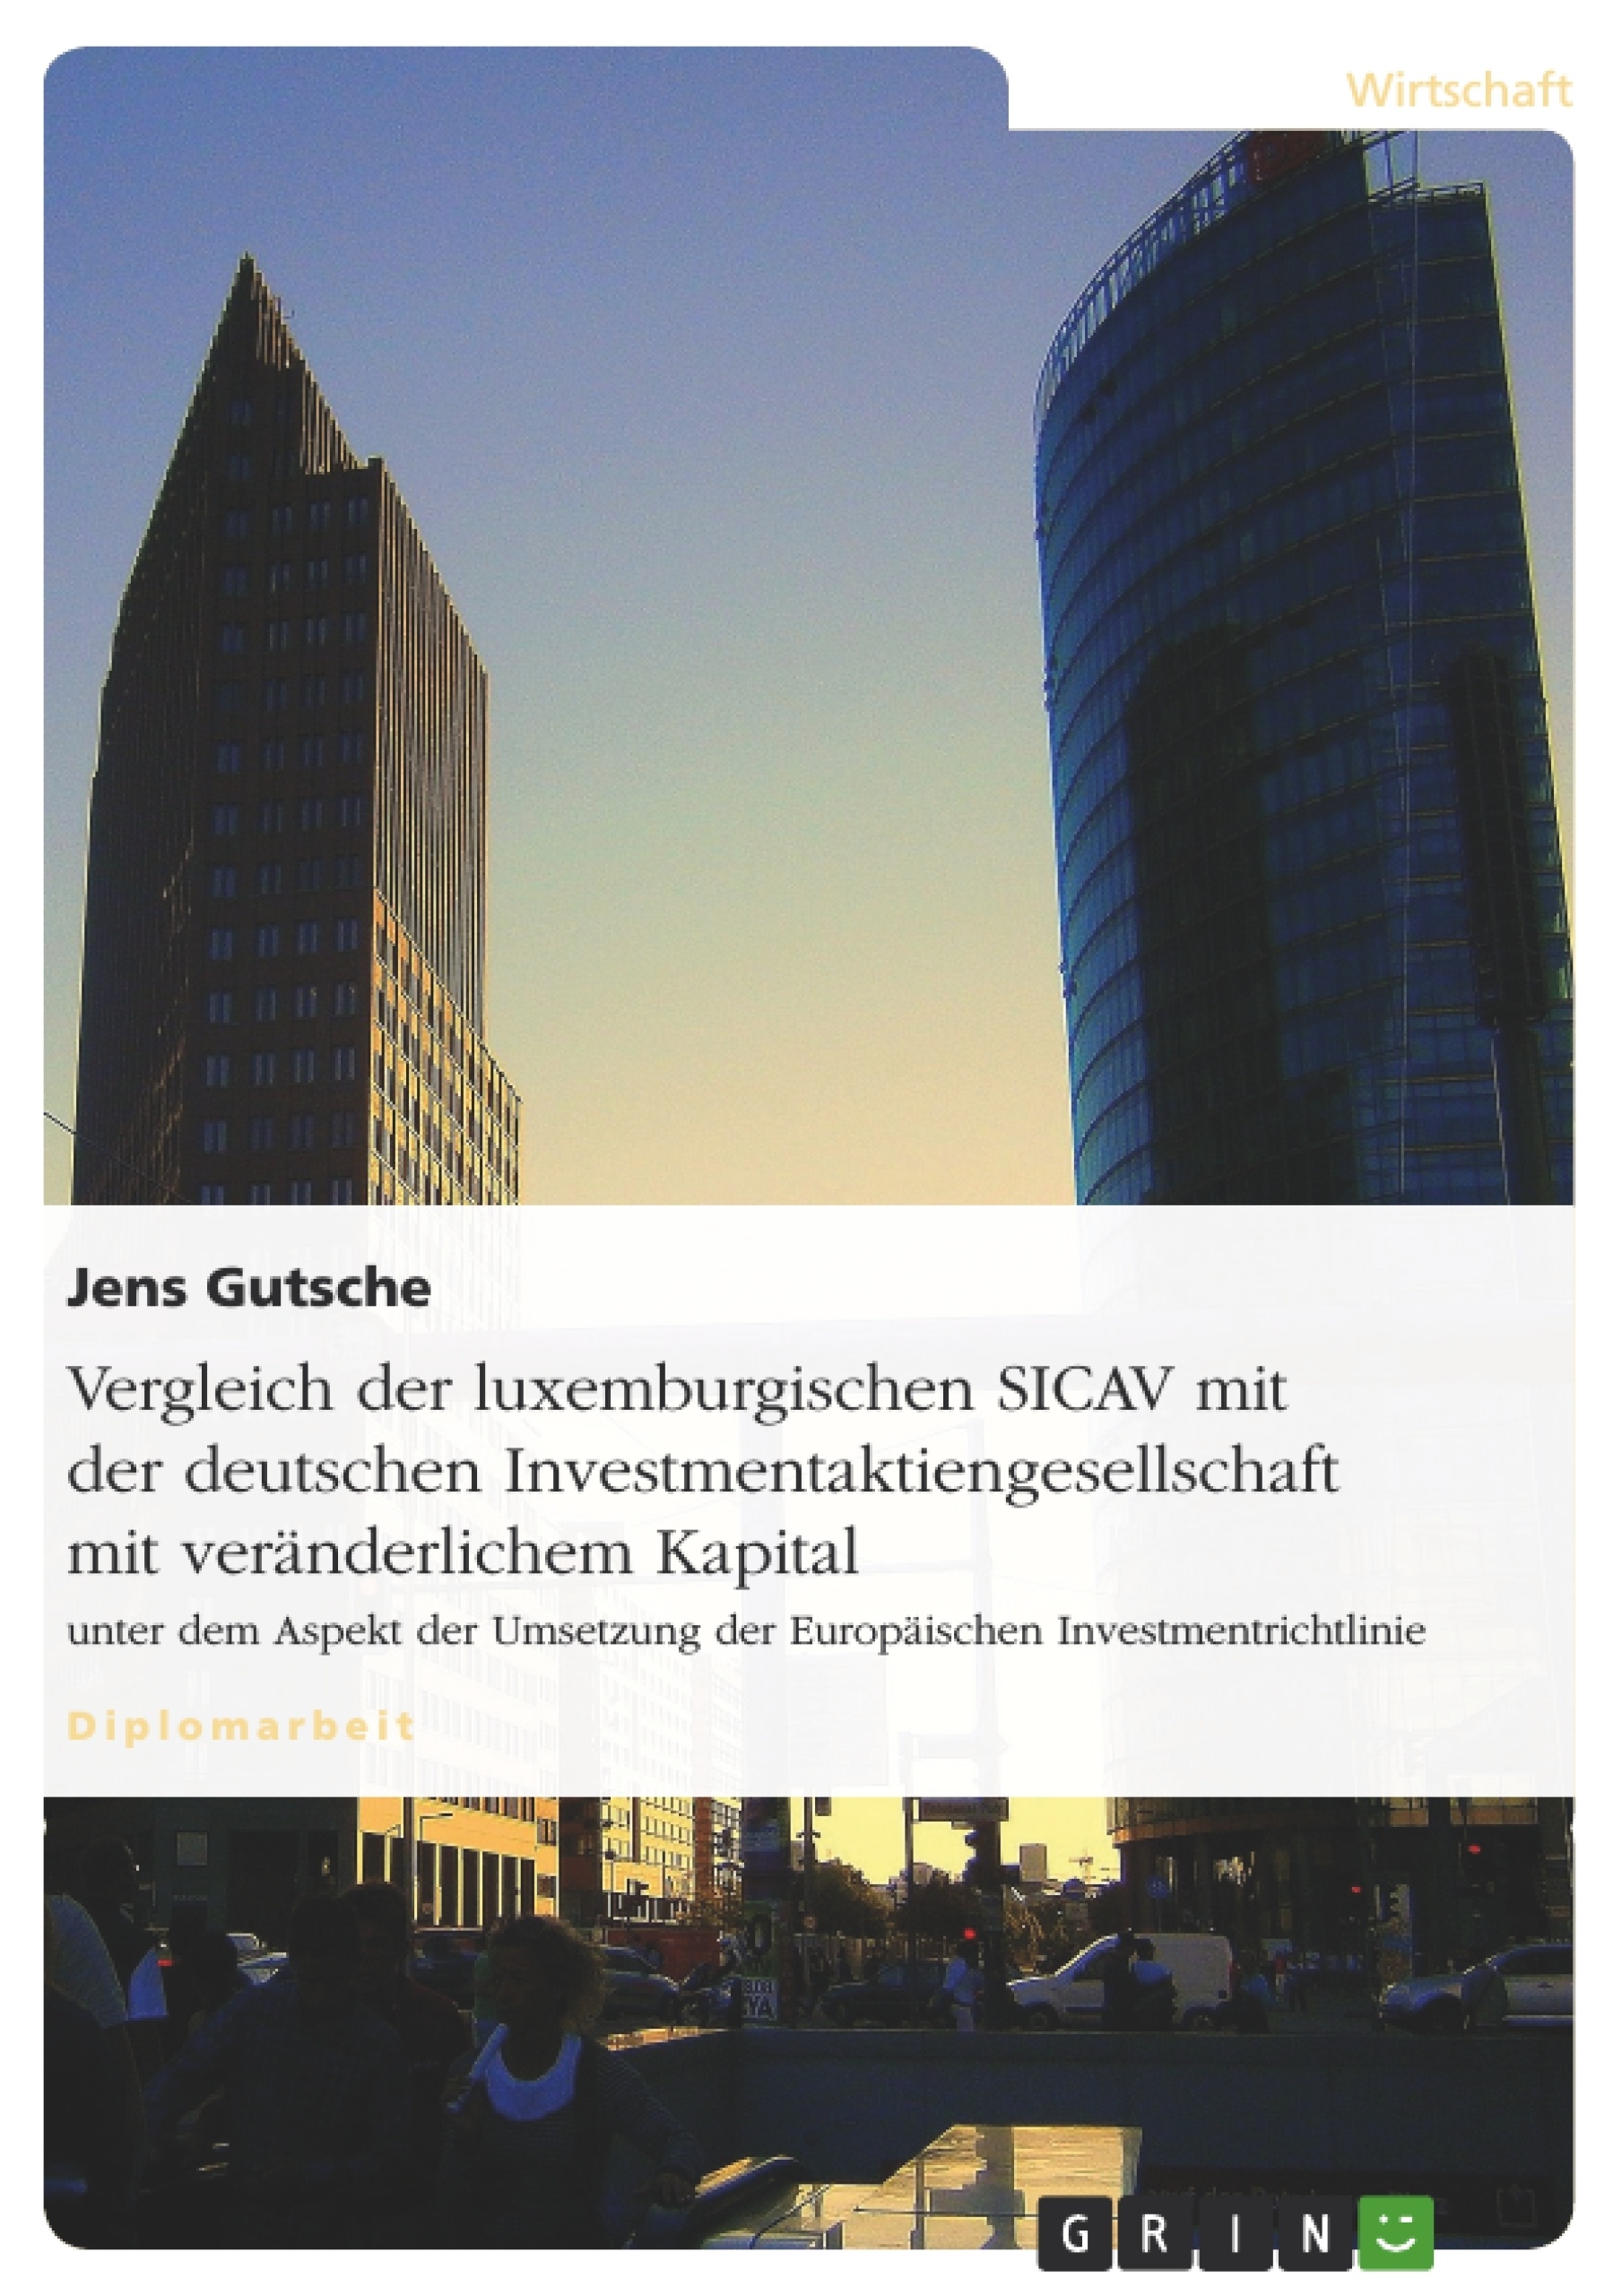 Title: Vergleich der luxemburgischen SICAV mit der deutschen Investmentaktiengesellschaft mit veränderlichem Kapital